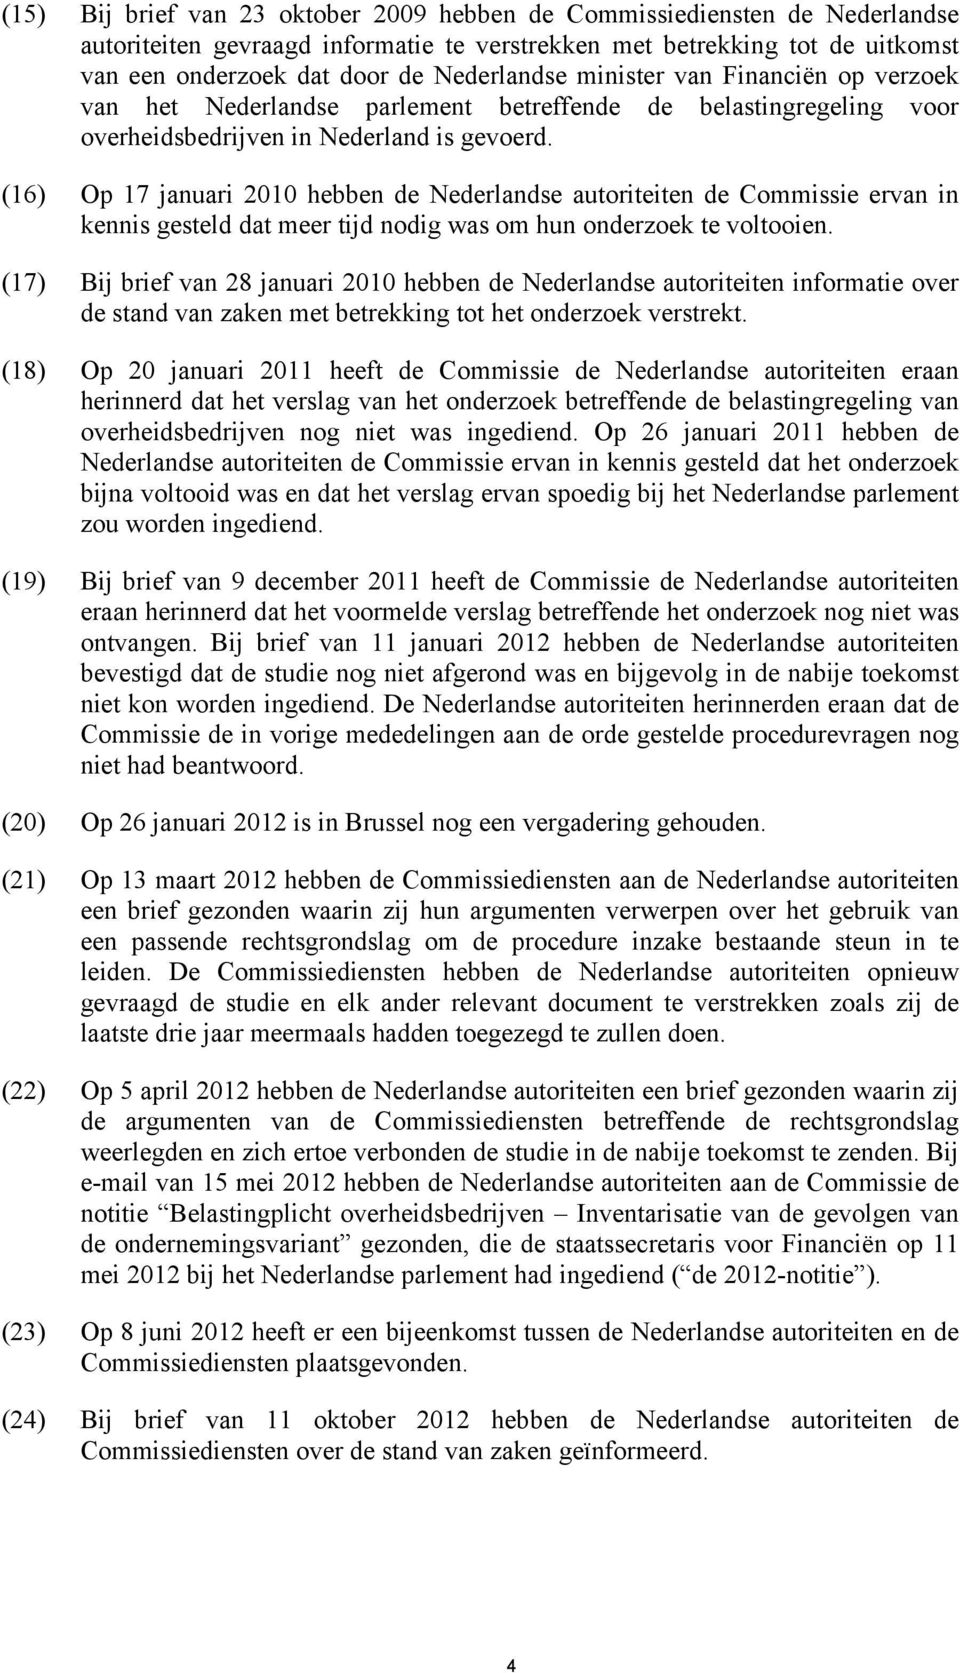 (16) Op 17 januari 2010 hebben de Nederlandse autoriteiten de Commissie ervan in kennis gesteld dat meer tijd nodig was om hun onderzoek te voltooien.